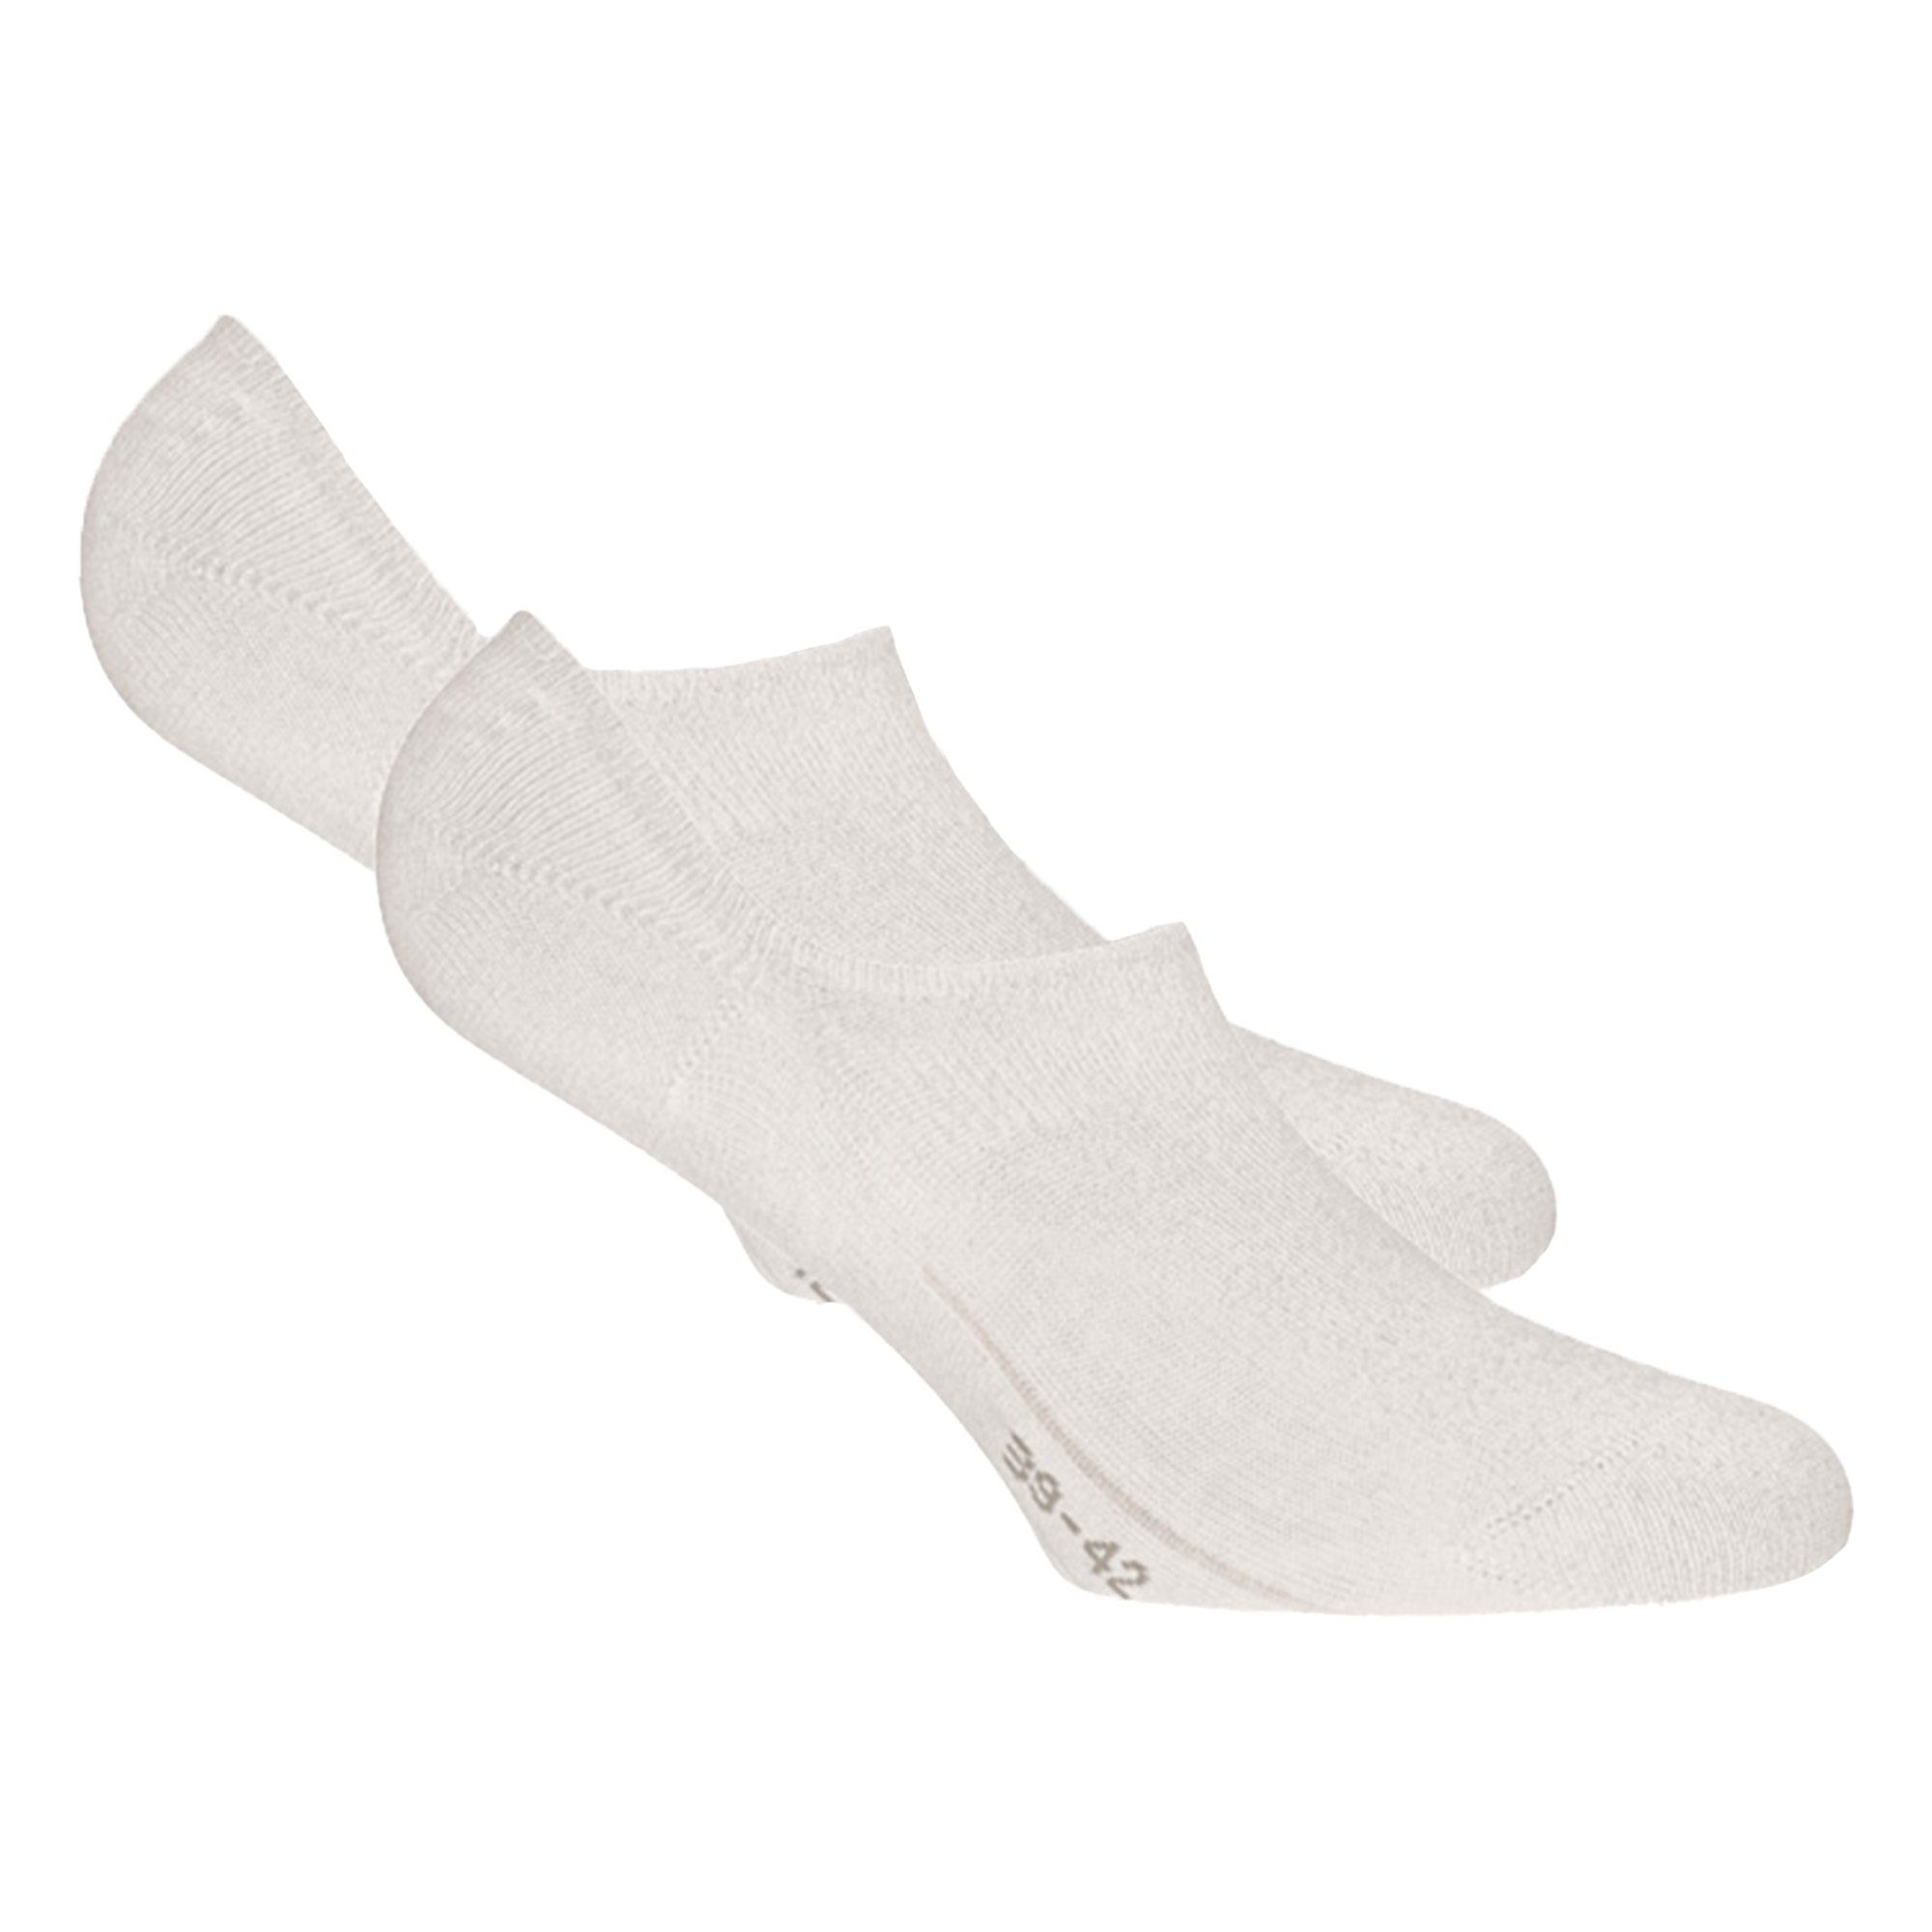 - Footies Rohner 2er Füßlinge Pack Weiß Unisex Füßlinge, Socks Basic